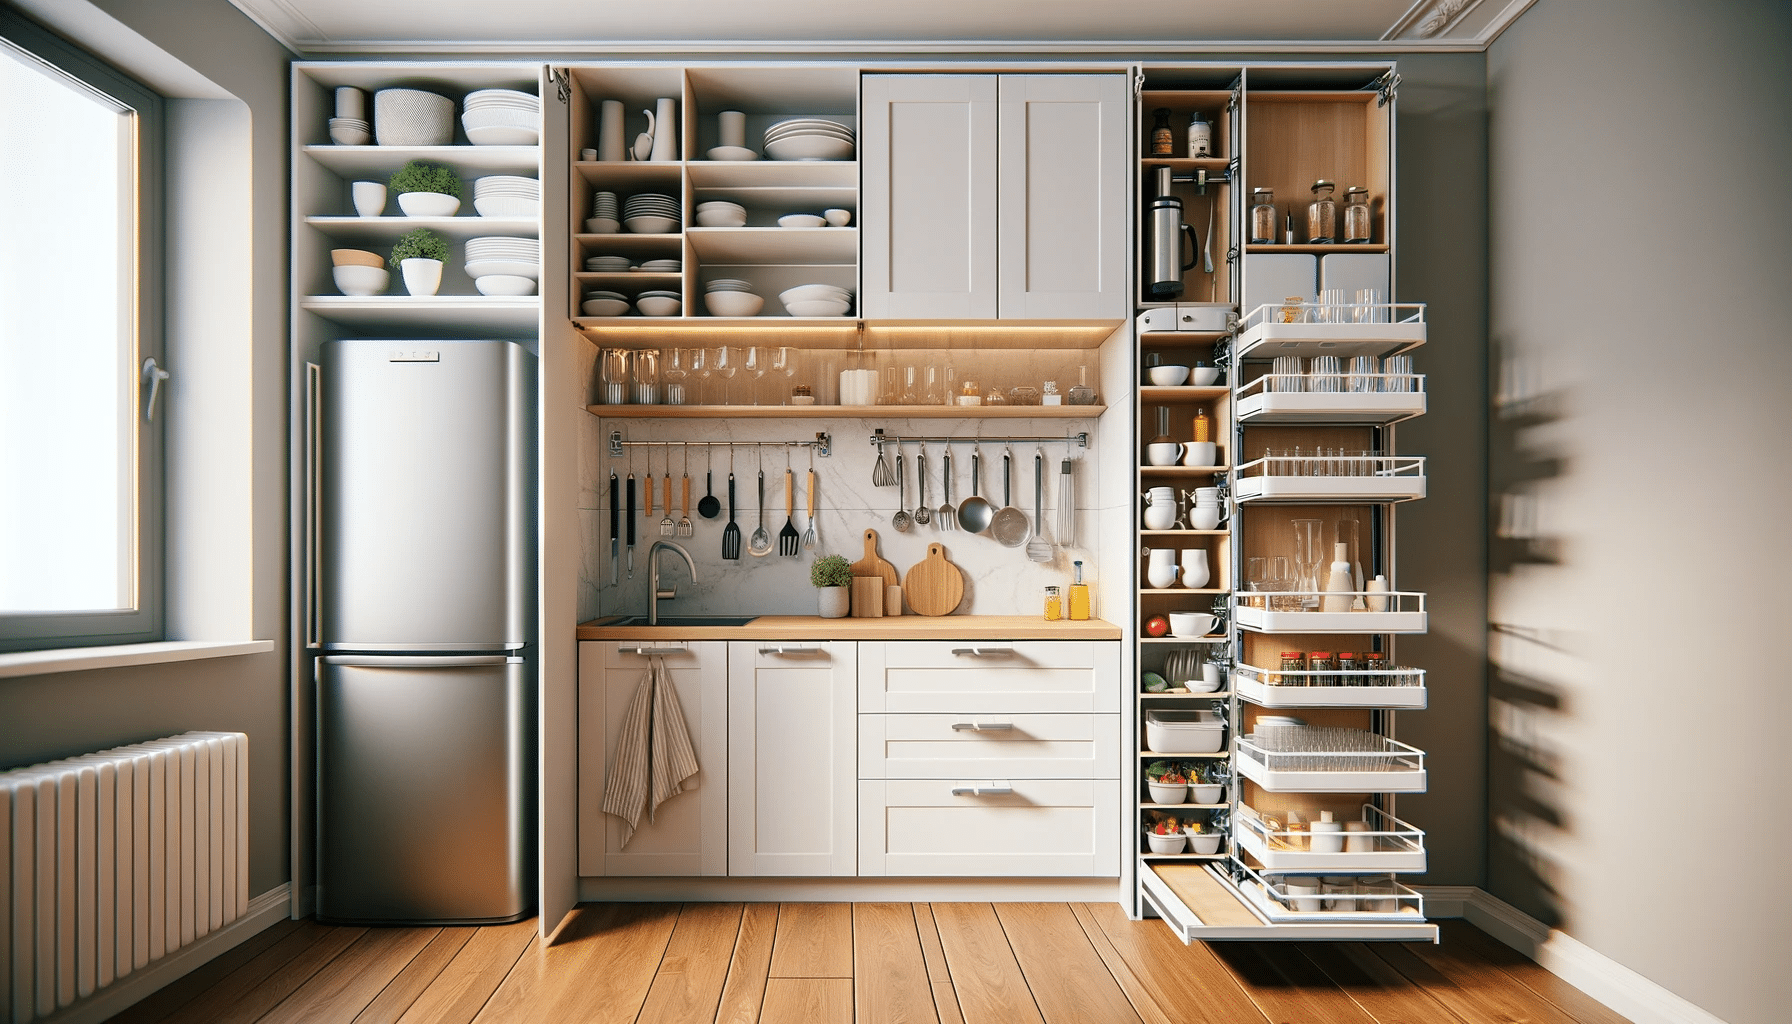 La cucina nell'armadio: mobili compatti e salvaspazio - Cose di Casa